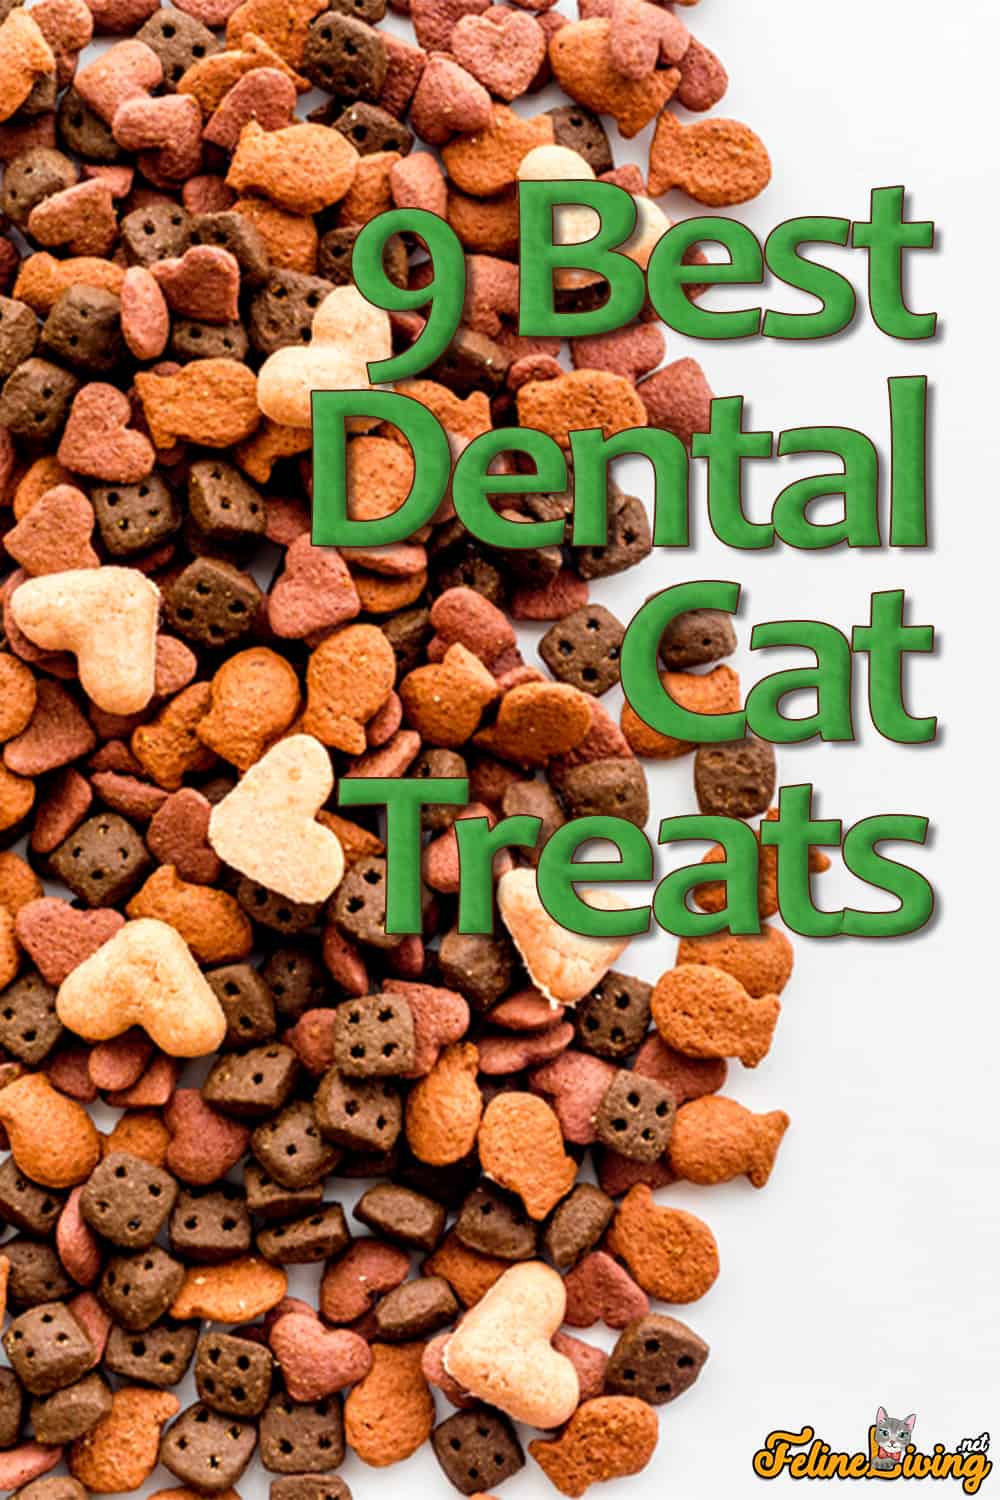 9 Beste tandheelkundige traktaties voor katten in 2022: redenen waarom je ze zou moeten geven onthuld!